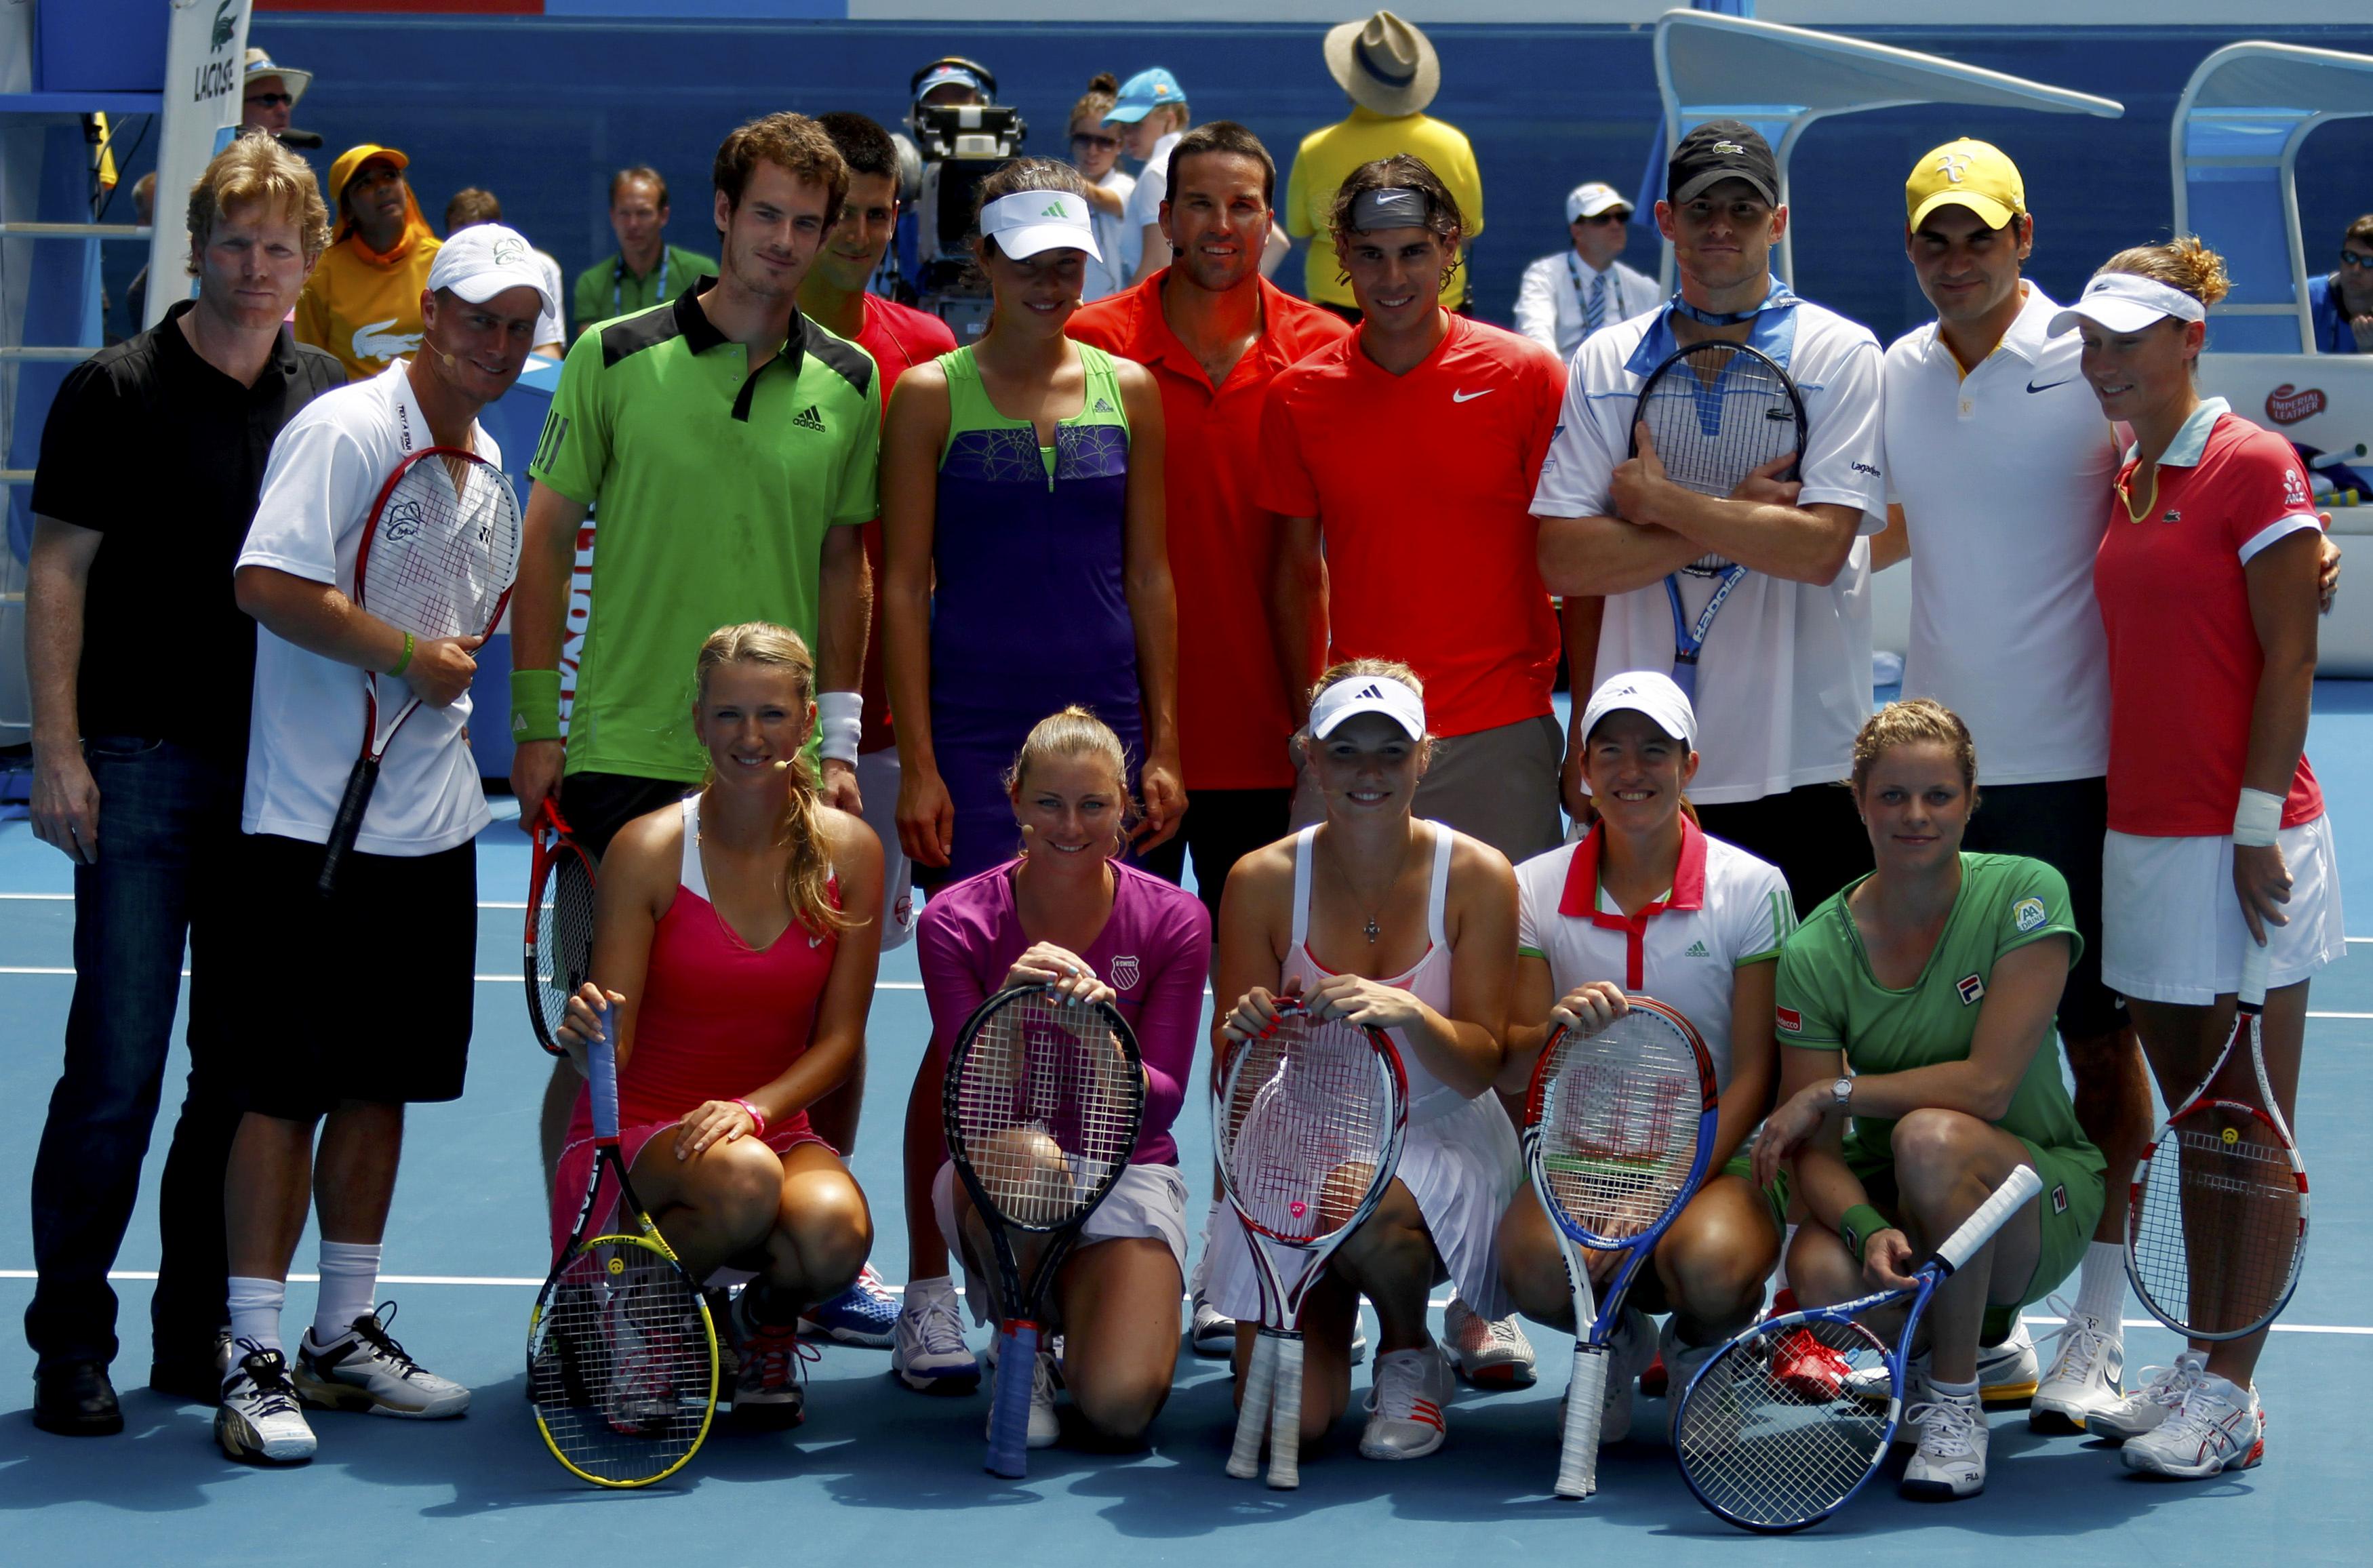 Match organization. Групповые фото лучших теннисистов.